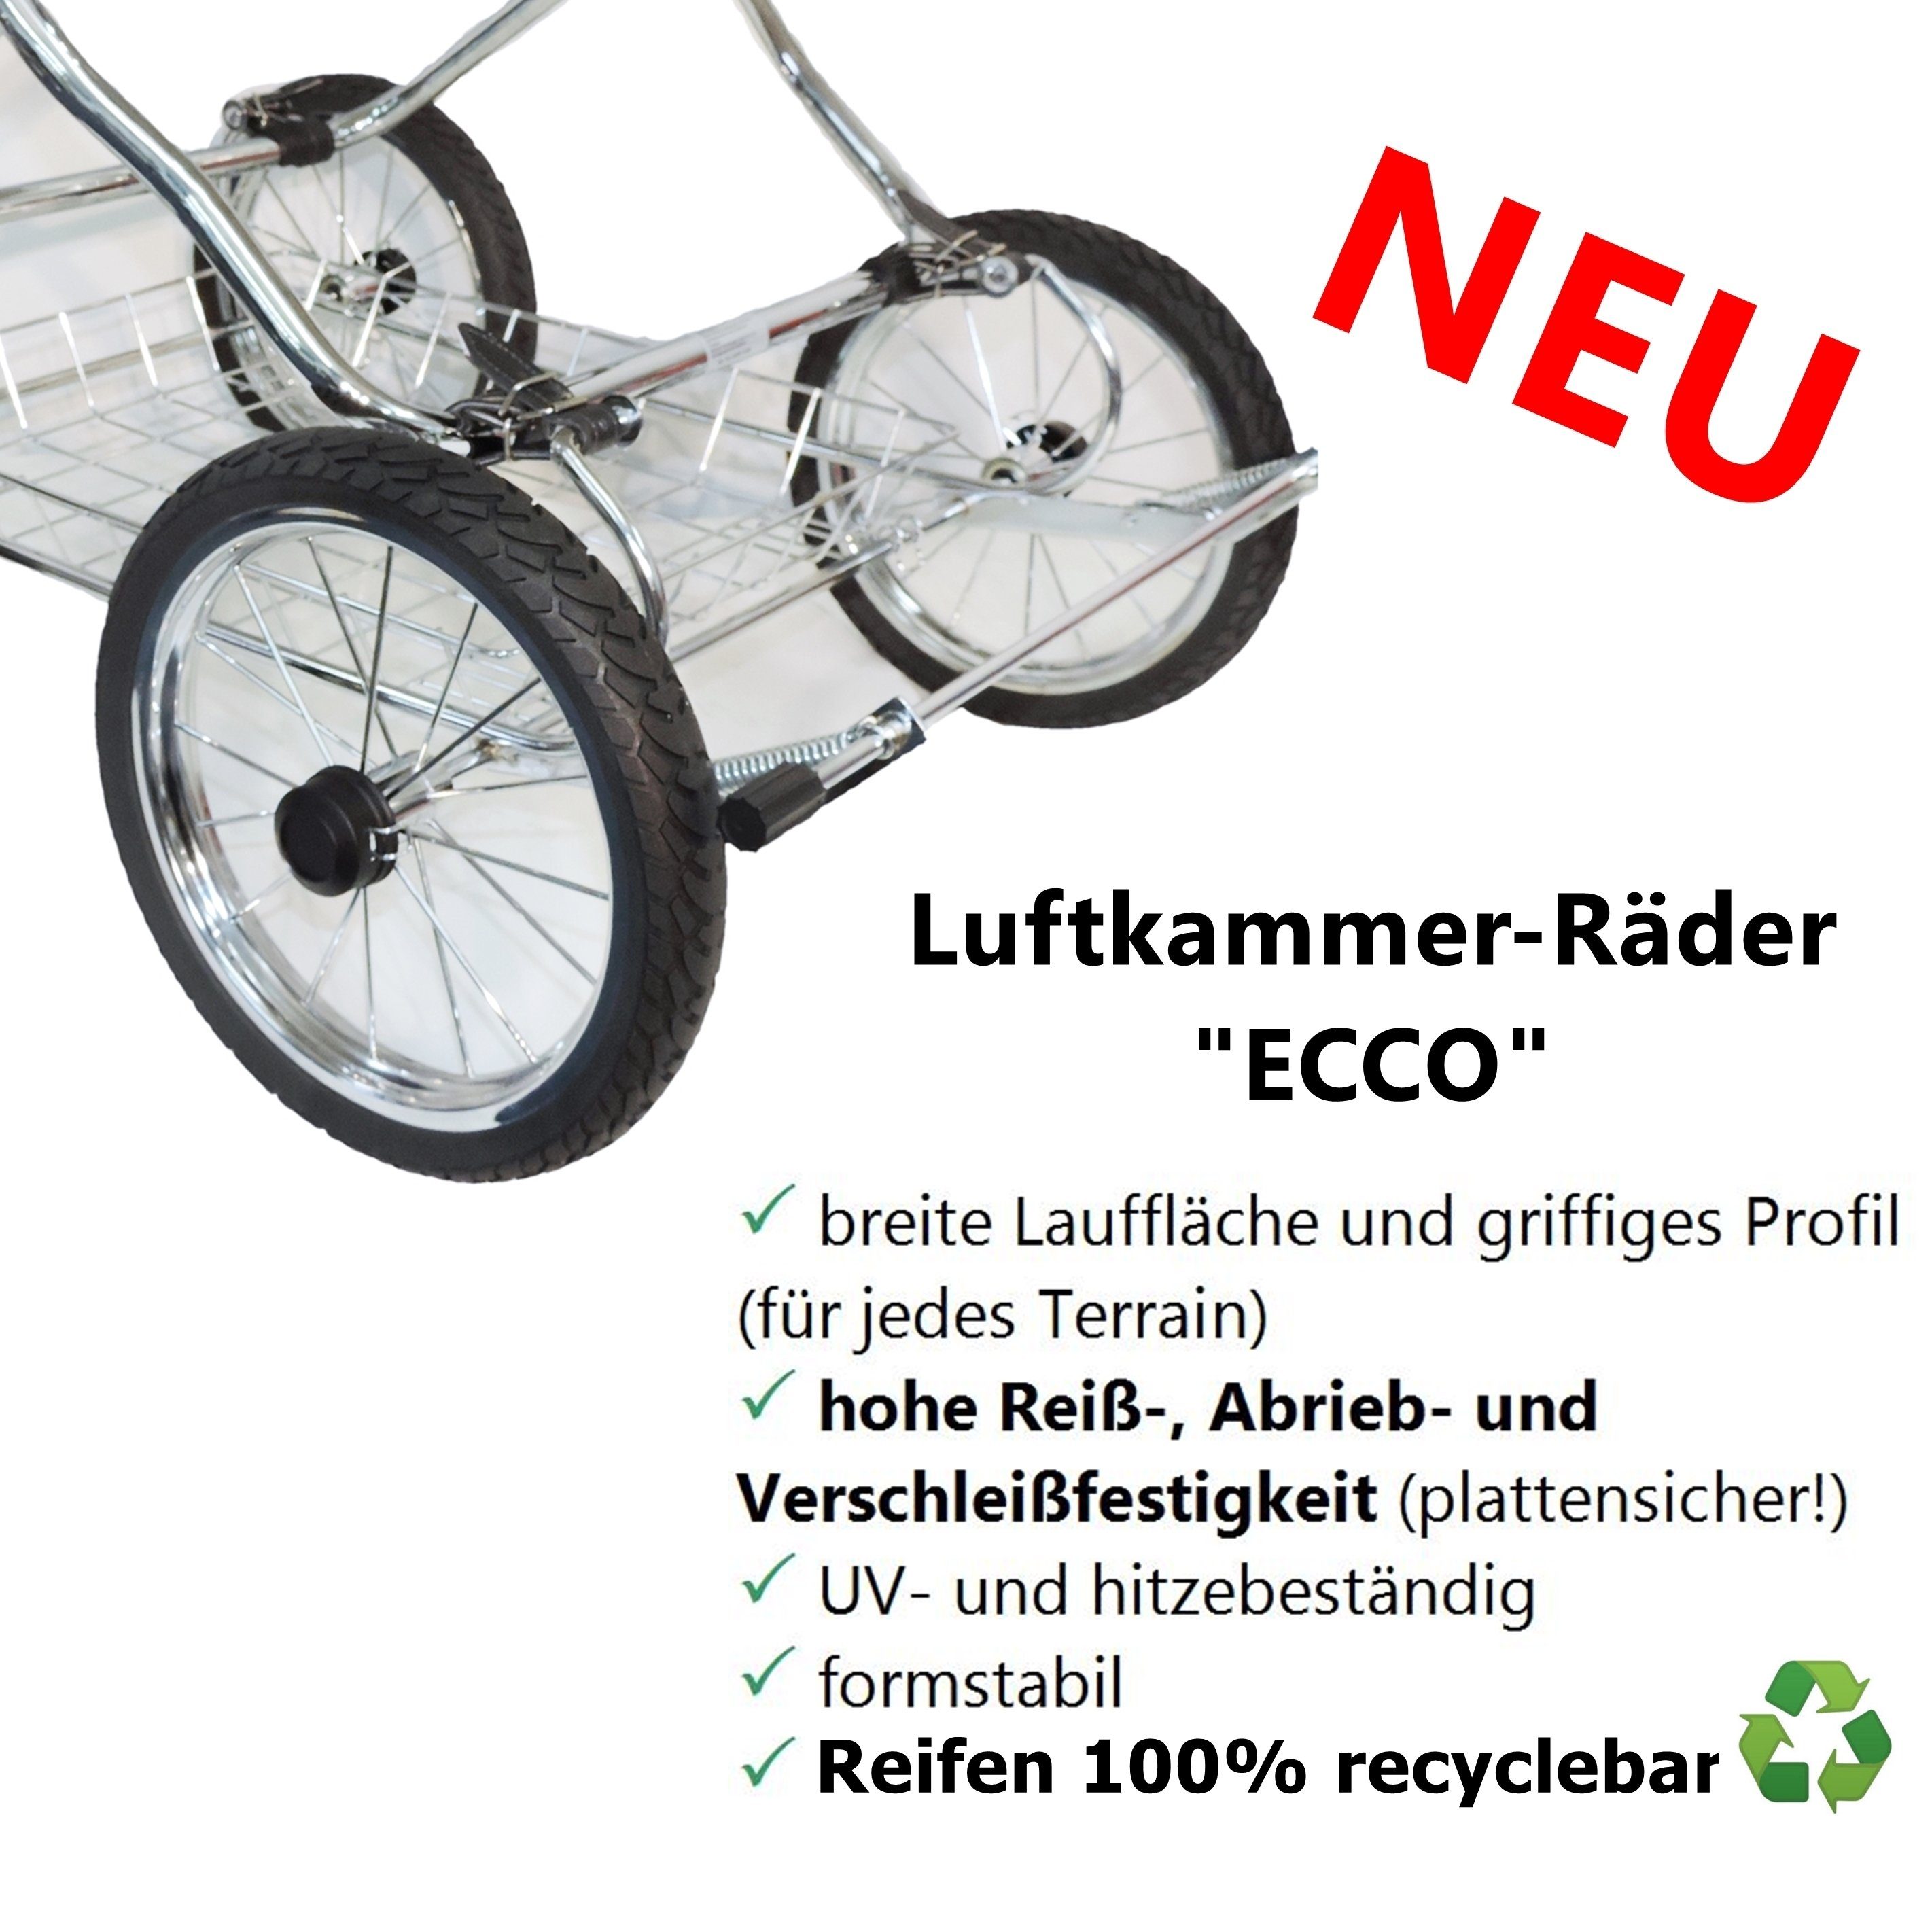 Eichhorn Kinderwagen Sport-Kinderwagen Designer-ECO, mit recyclebarer - EU in beige Komponenten made alle Luftkammerbereifung